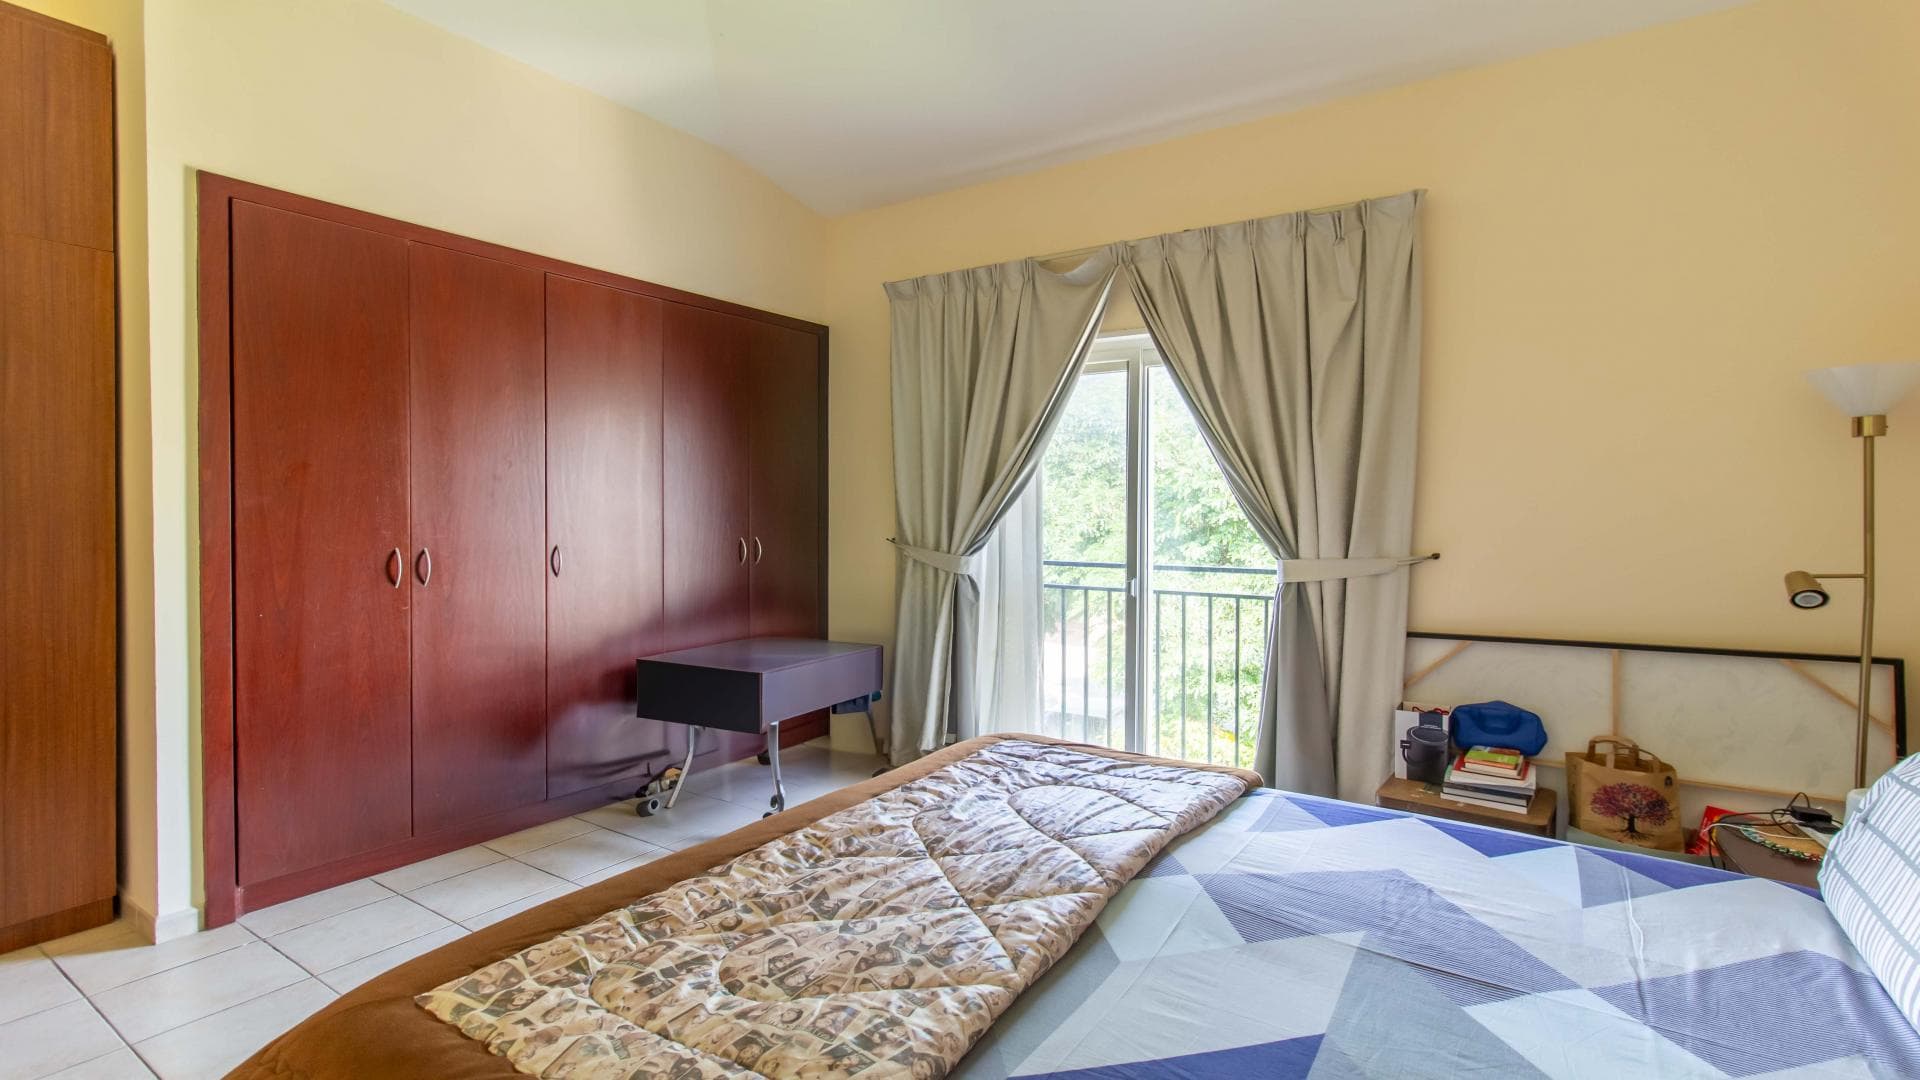 5 Bedroom Villa For Rent Al Thamam 36 Lp37870 3224a12262883600.jpg